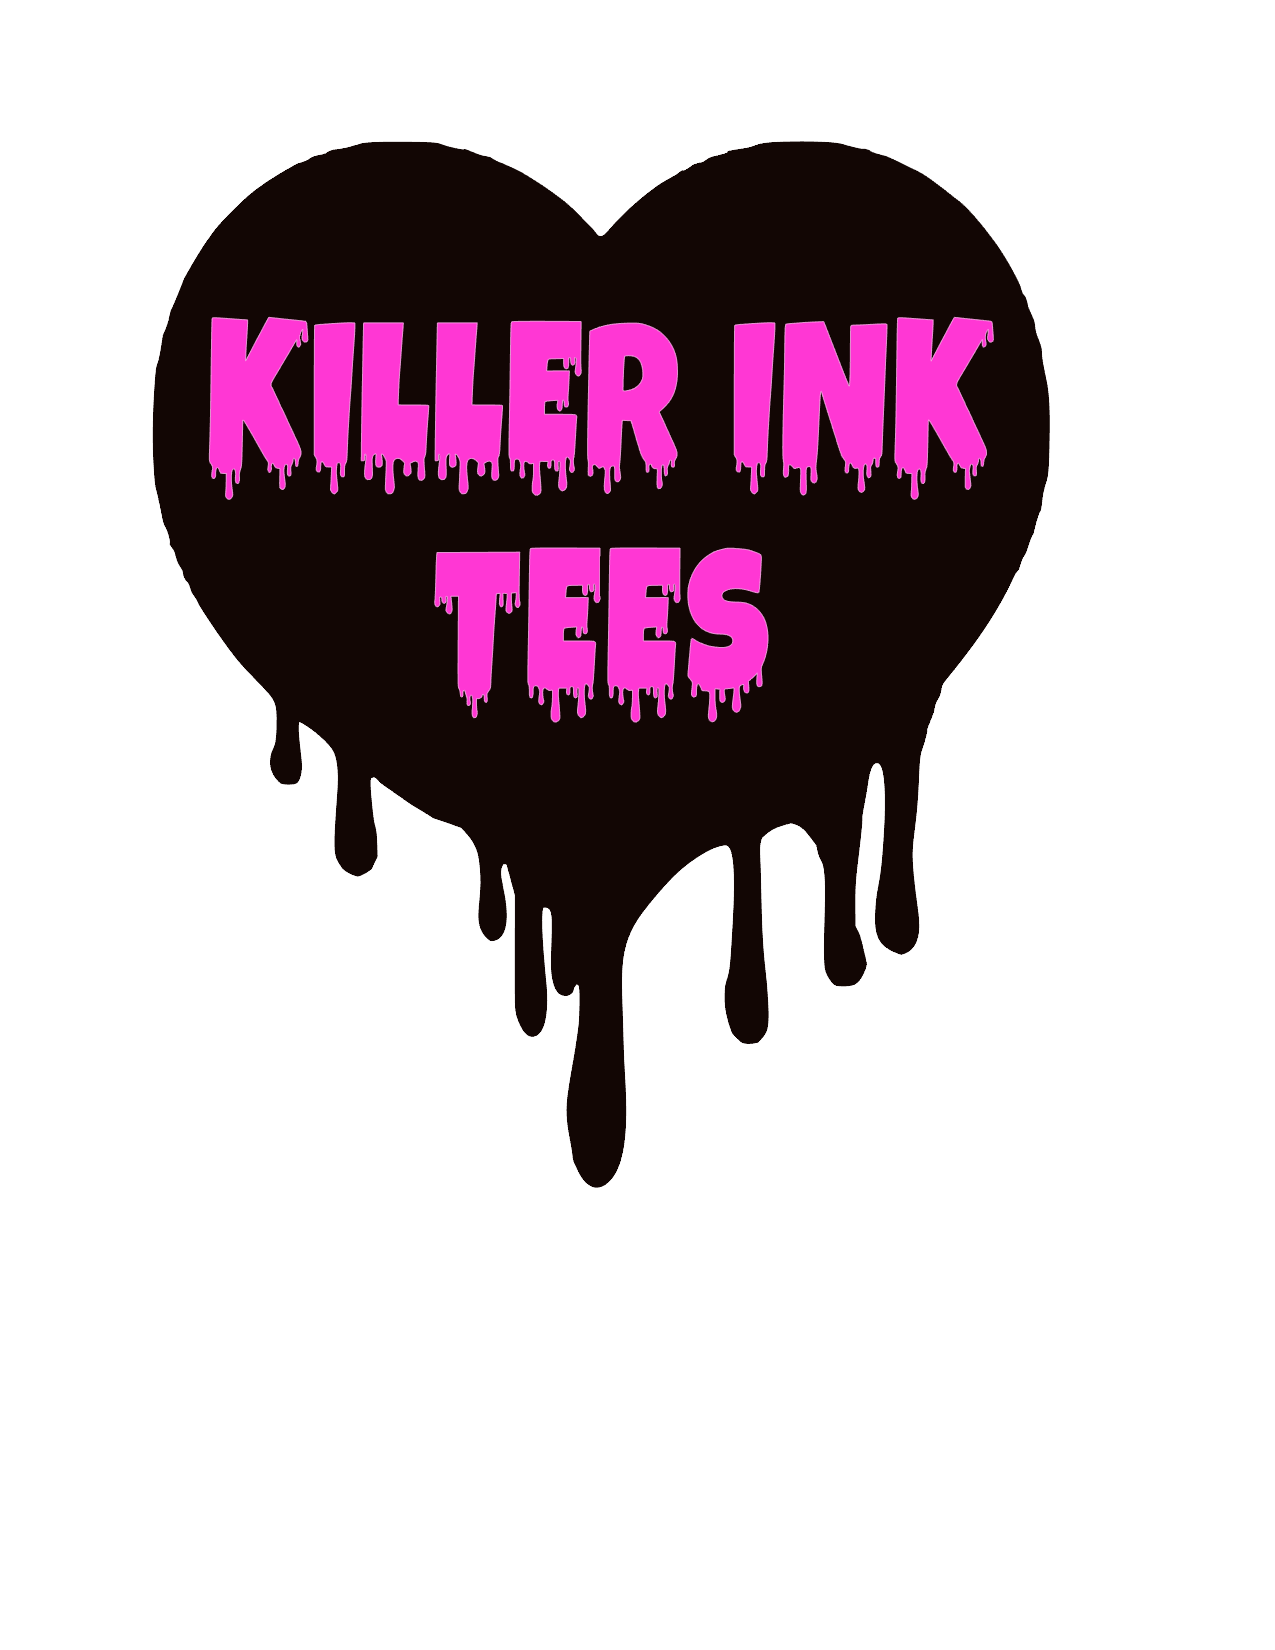 http://killerinktees.com/cdn/shop/files/Killer_ink_tees_logo_5a25b34d-9f45-44a1-a029-0f26838671cd.png?v=1677770988